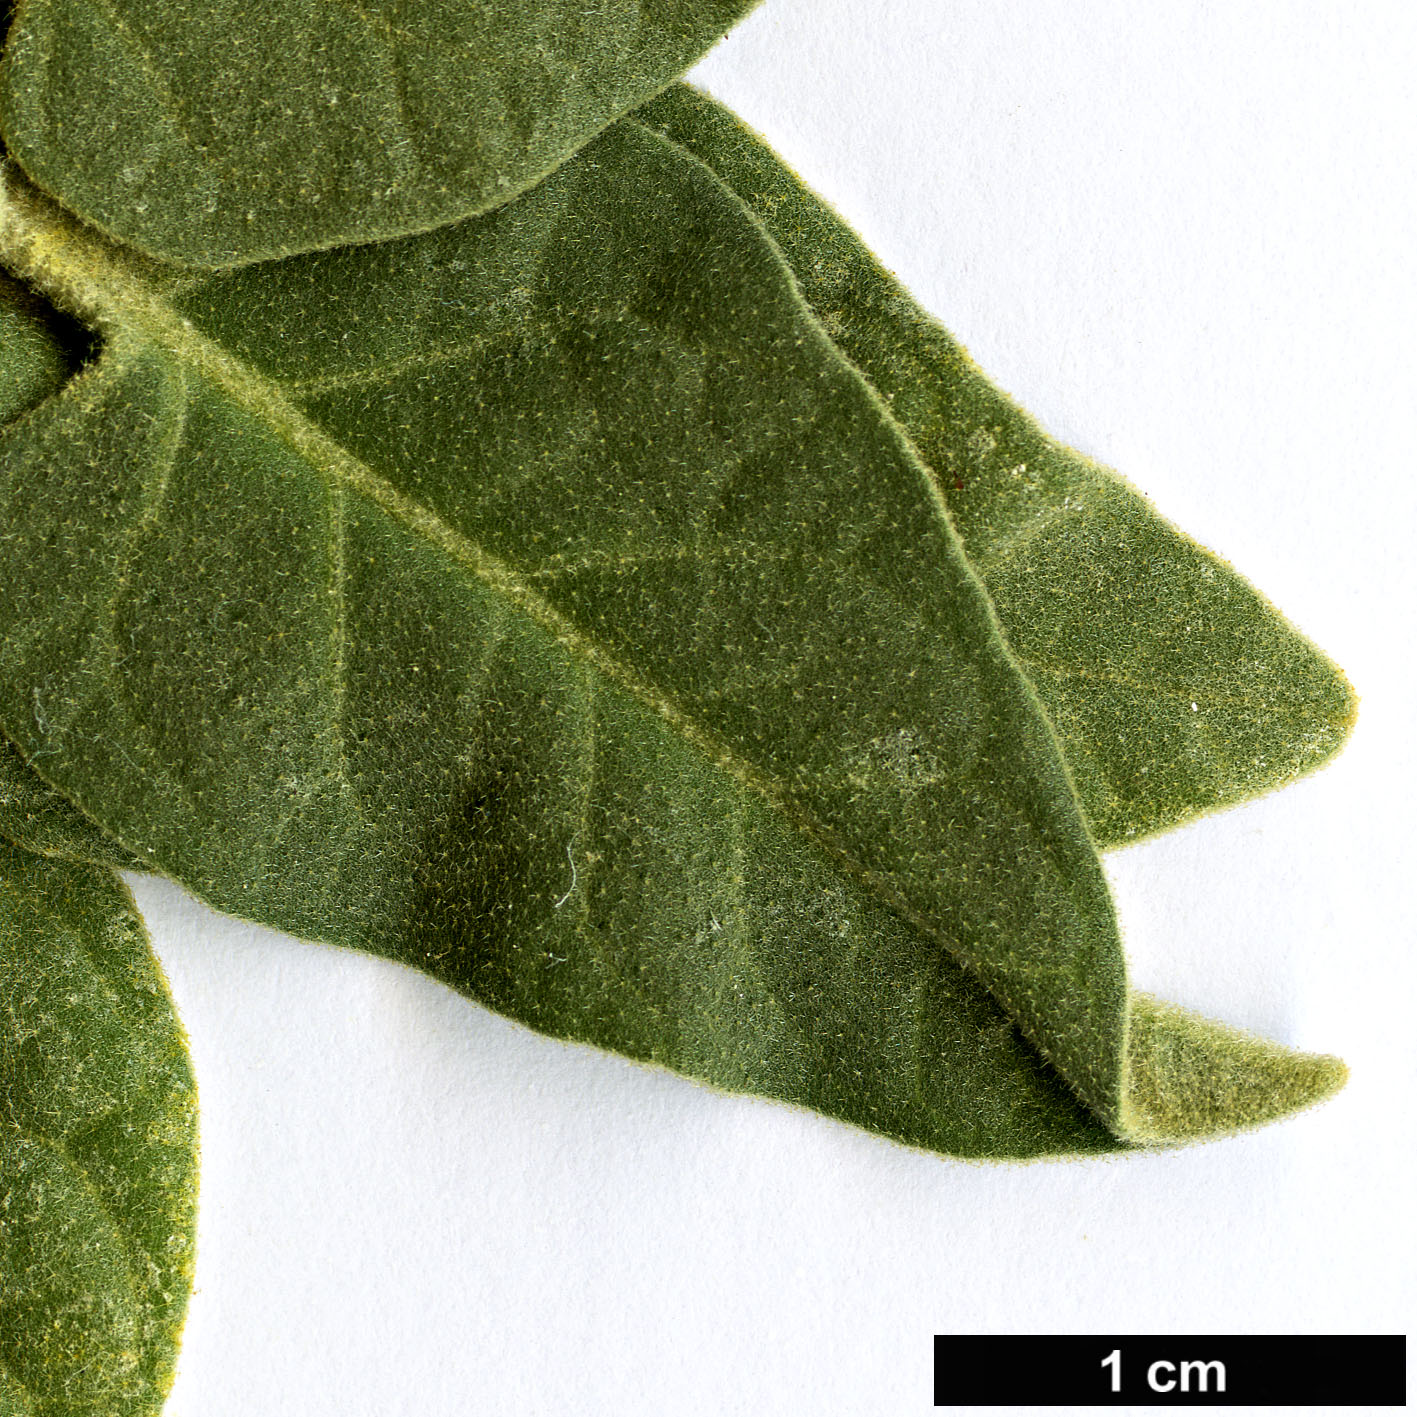 High resolution image: Family: Solanaceae - Genus: Solanum - Taxon: lidii